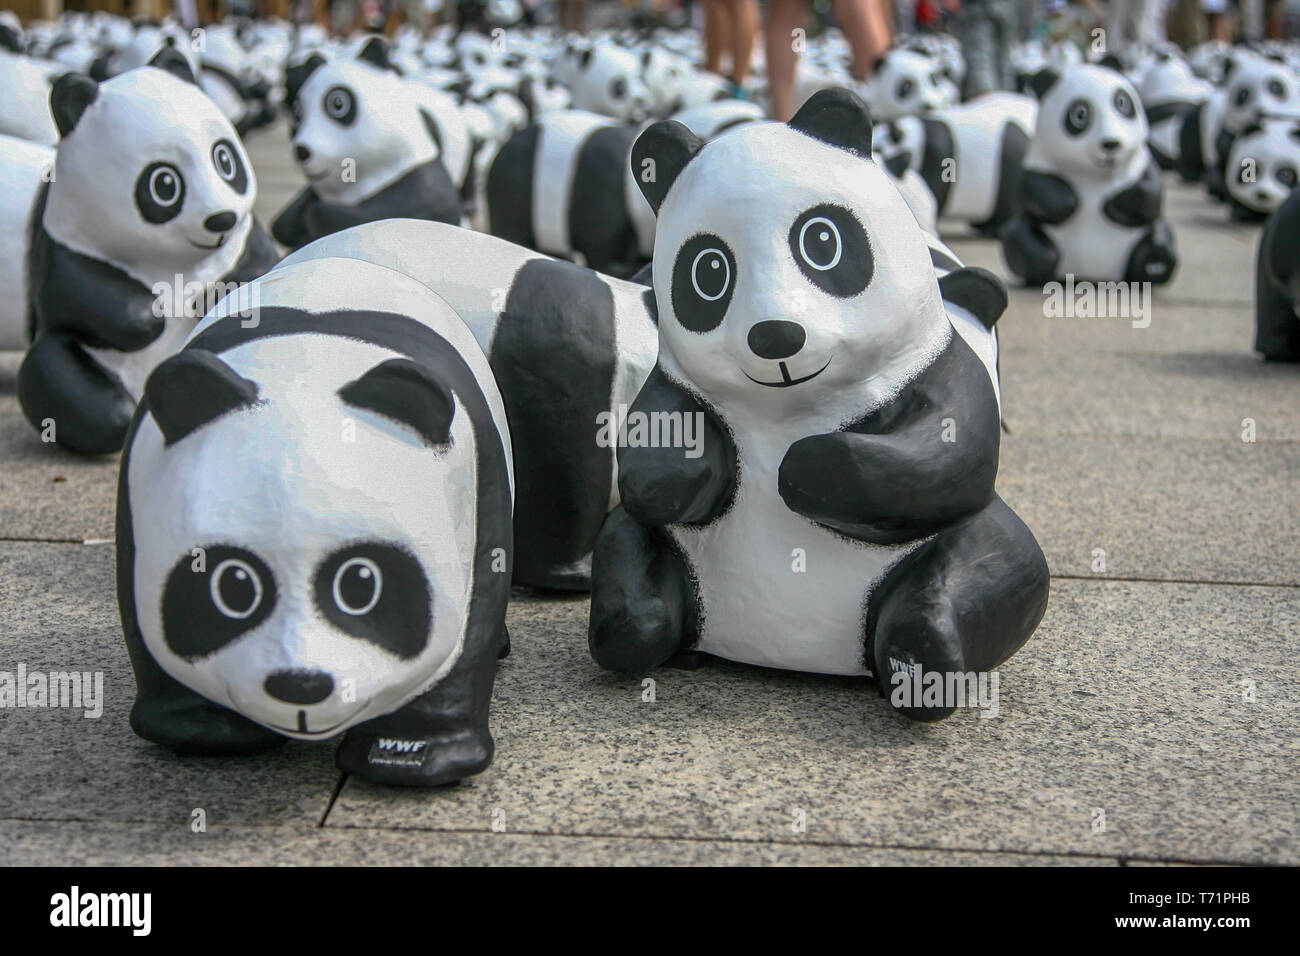 Berlino, Germania, 6 Agosto 2013 - Il WWF festeggia il suo cinquantesimo anniversario con un panda tour. 1600 sculture di Pandabaeren sono state impostate nella parte anteriore di Berlino Stazione Centrale. Queste corrispondono alle effettivamente ancora viventi numero di Pandabaeren in libertà. Foto Stock